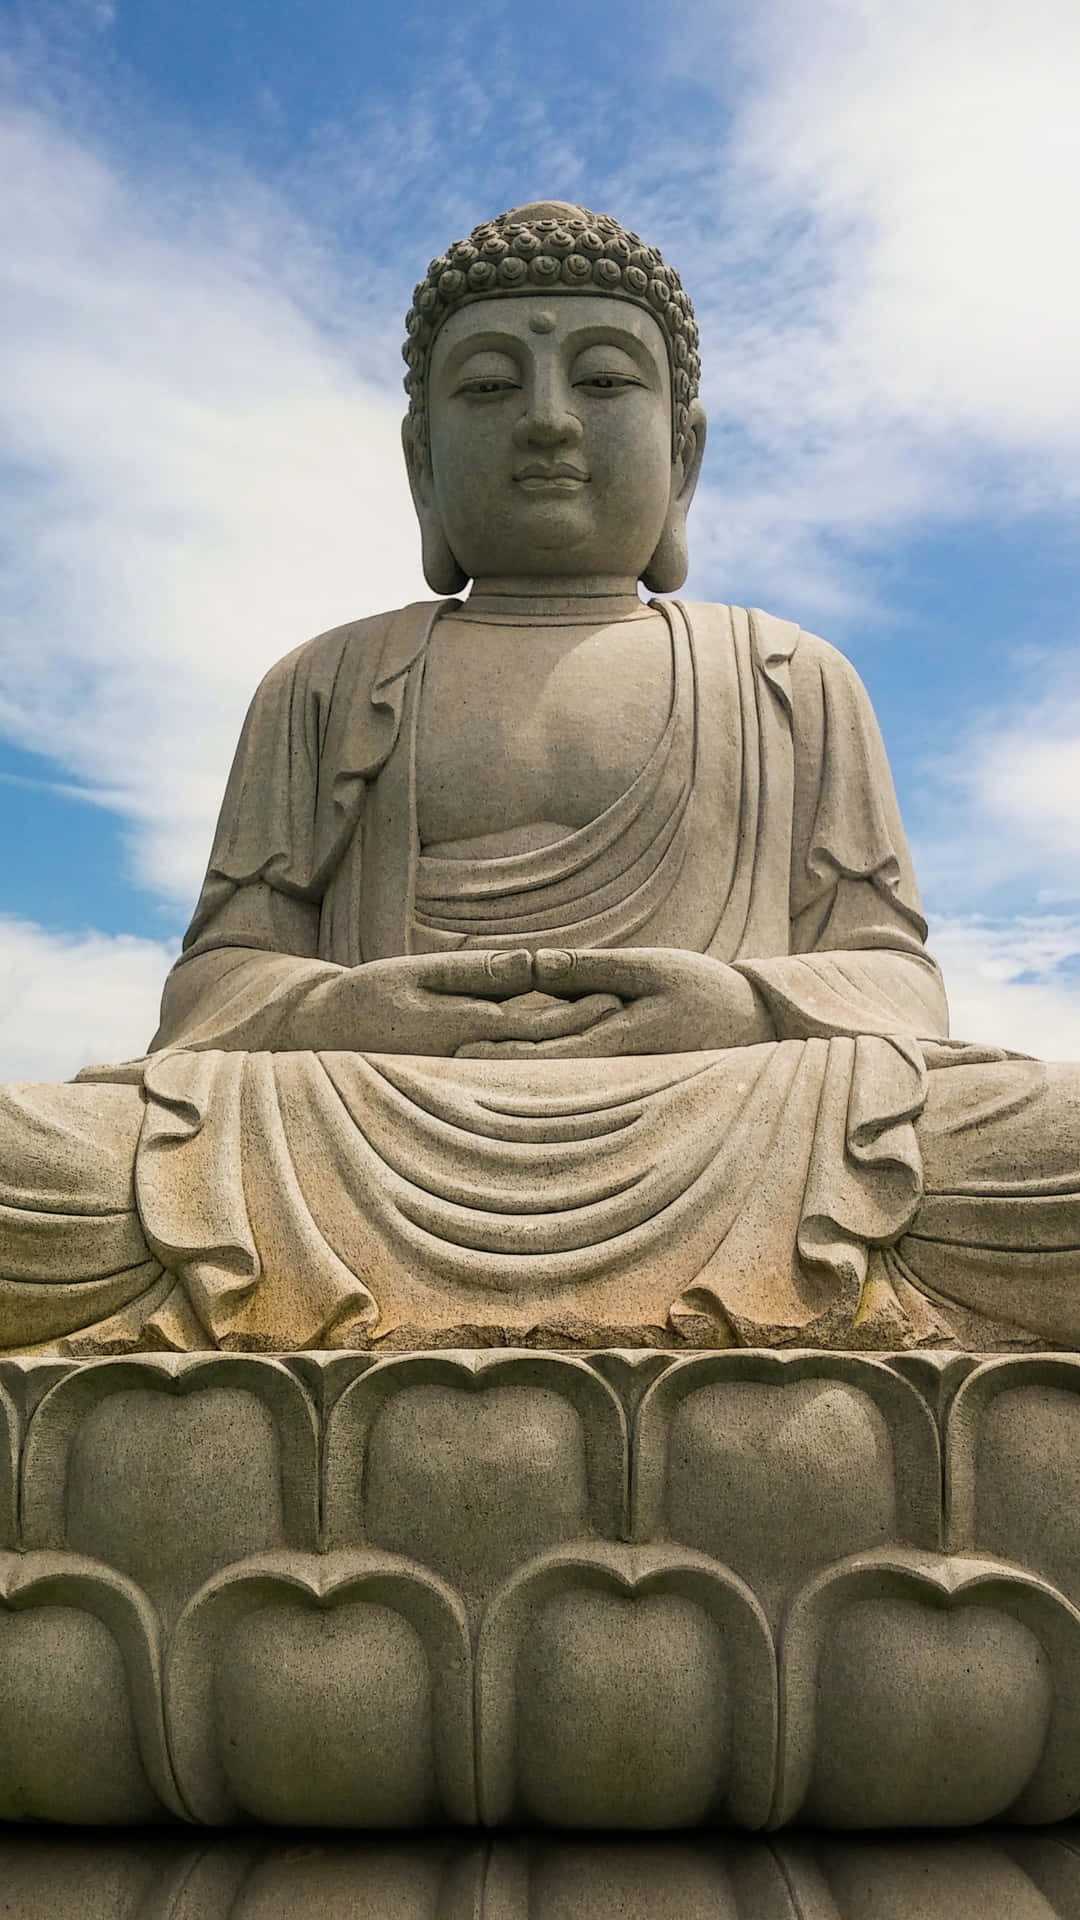 The Enlightened Teacher, Gautama Buddha